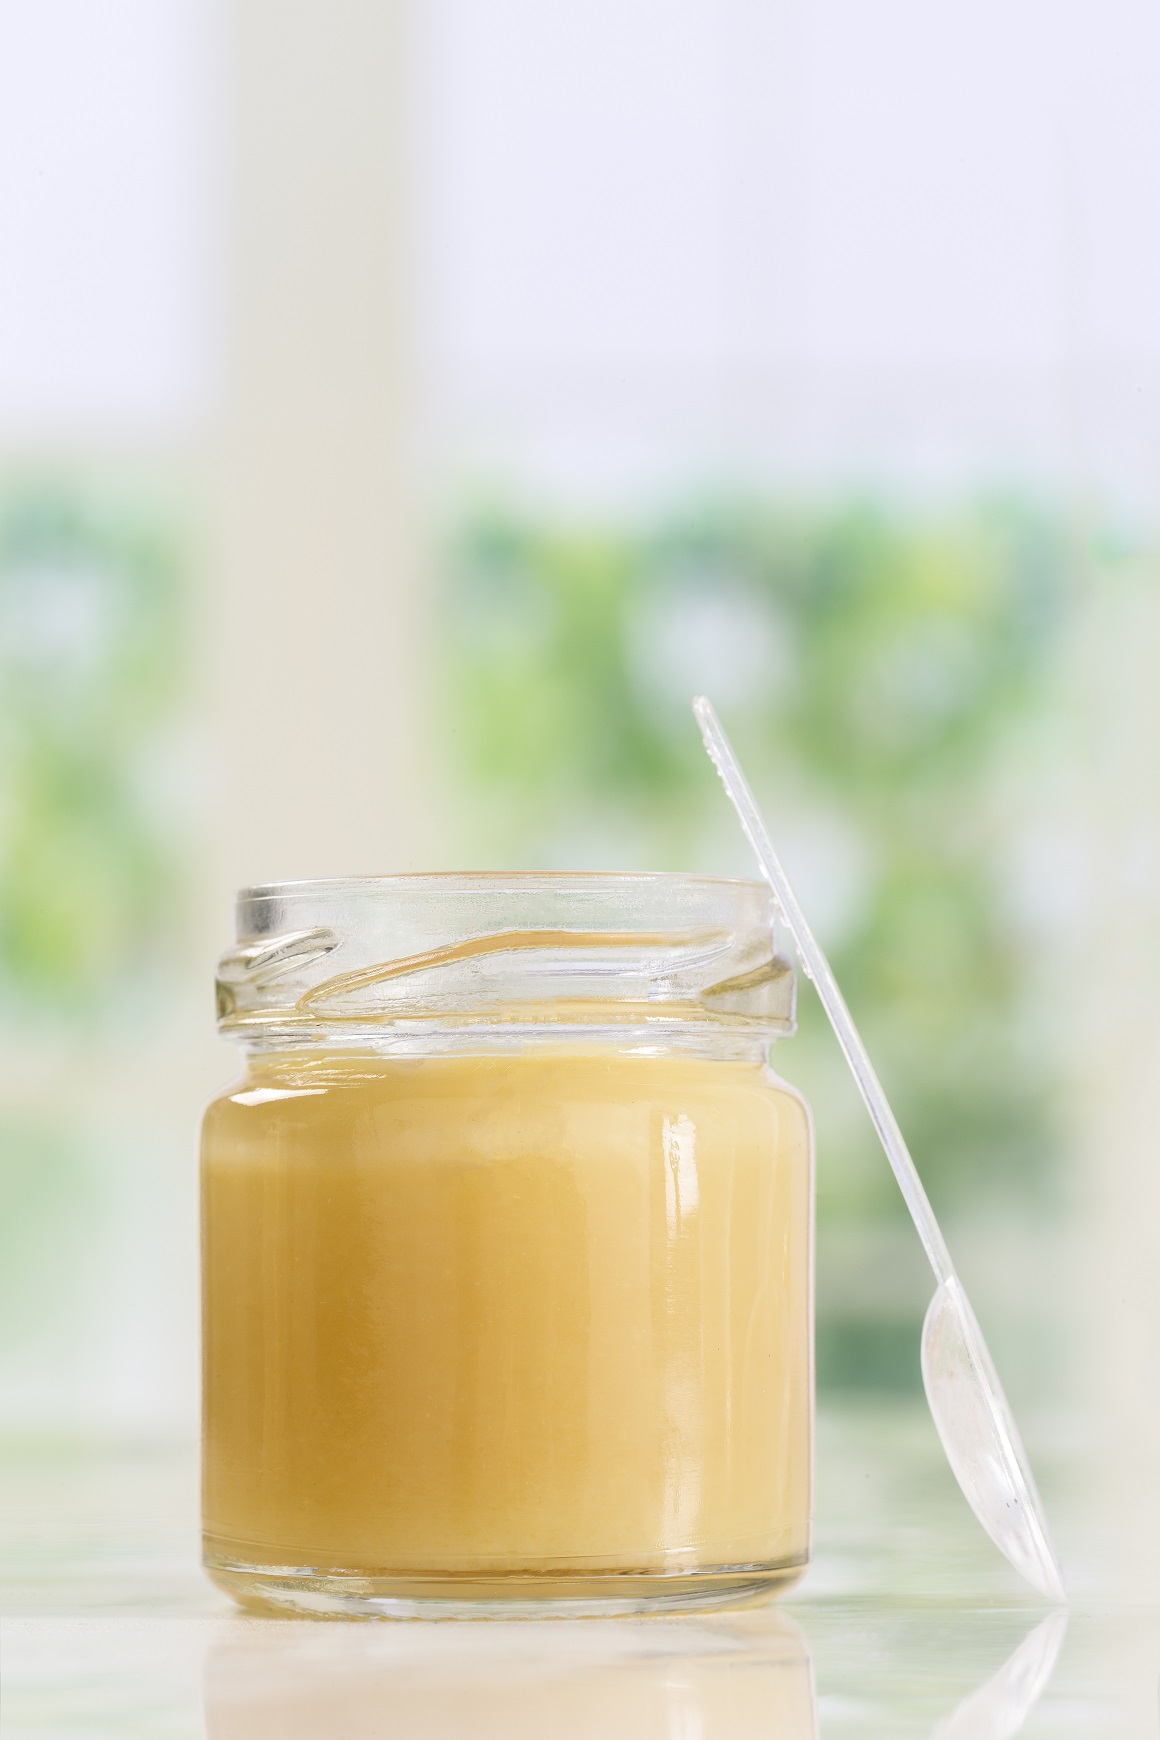 Matična mliječ je izlučevina pčelinjih žlijezda